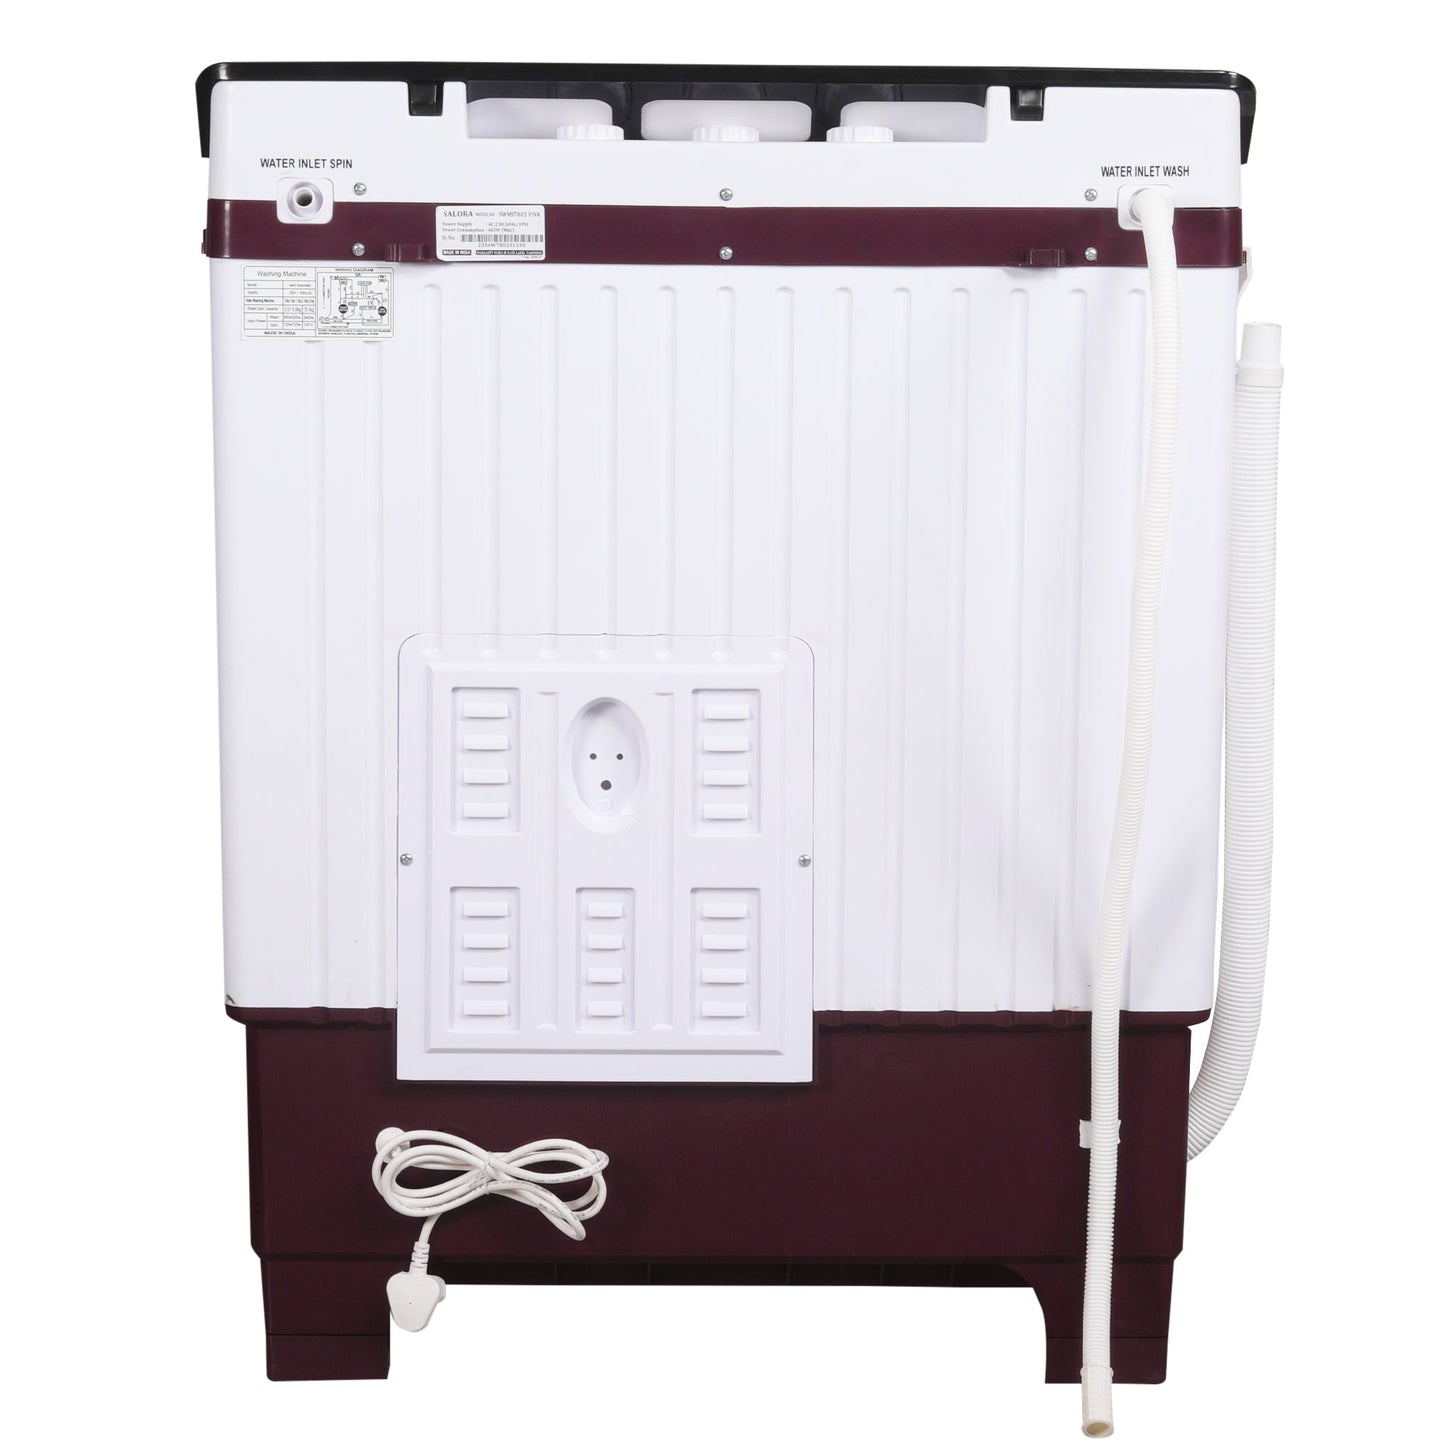 Salora 7.8 Kg Semi-Automatic Top Loading Washing Machine (SWMS7802, Pink )